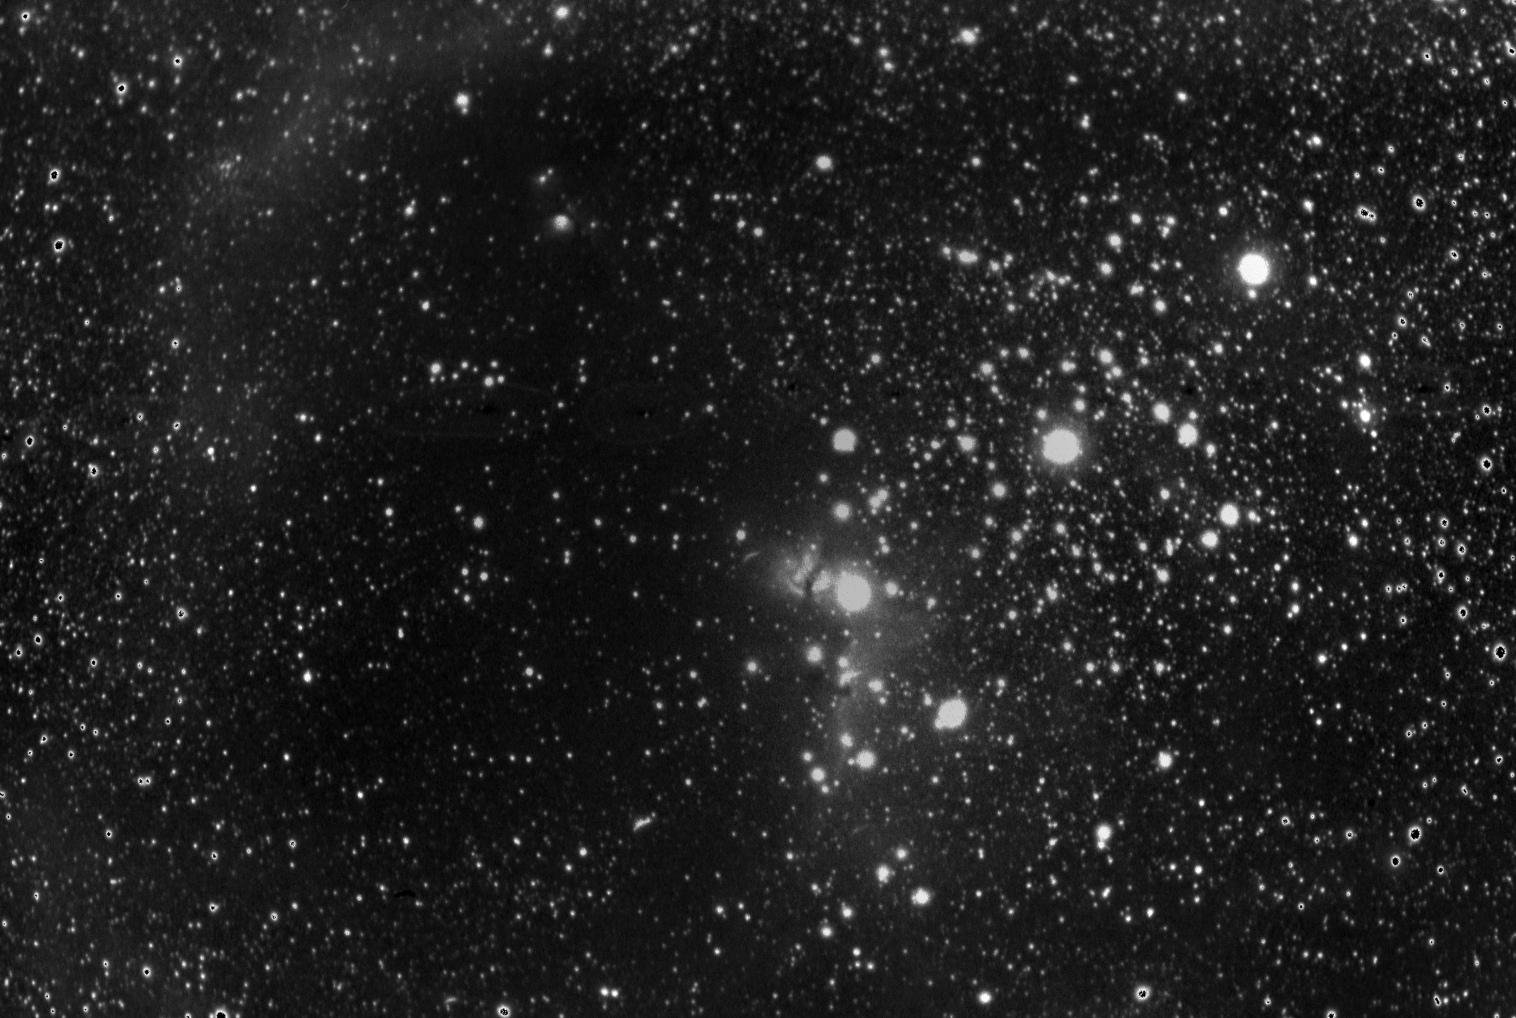 A770_Barnard33_Tele200_60mi_gimp.jpg.c85203f06a5f6b686e40342c4682f13e.jpg